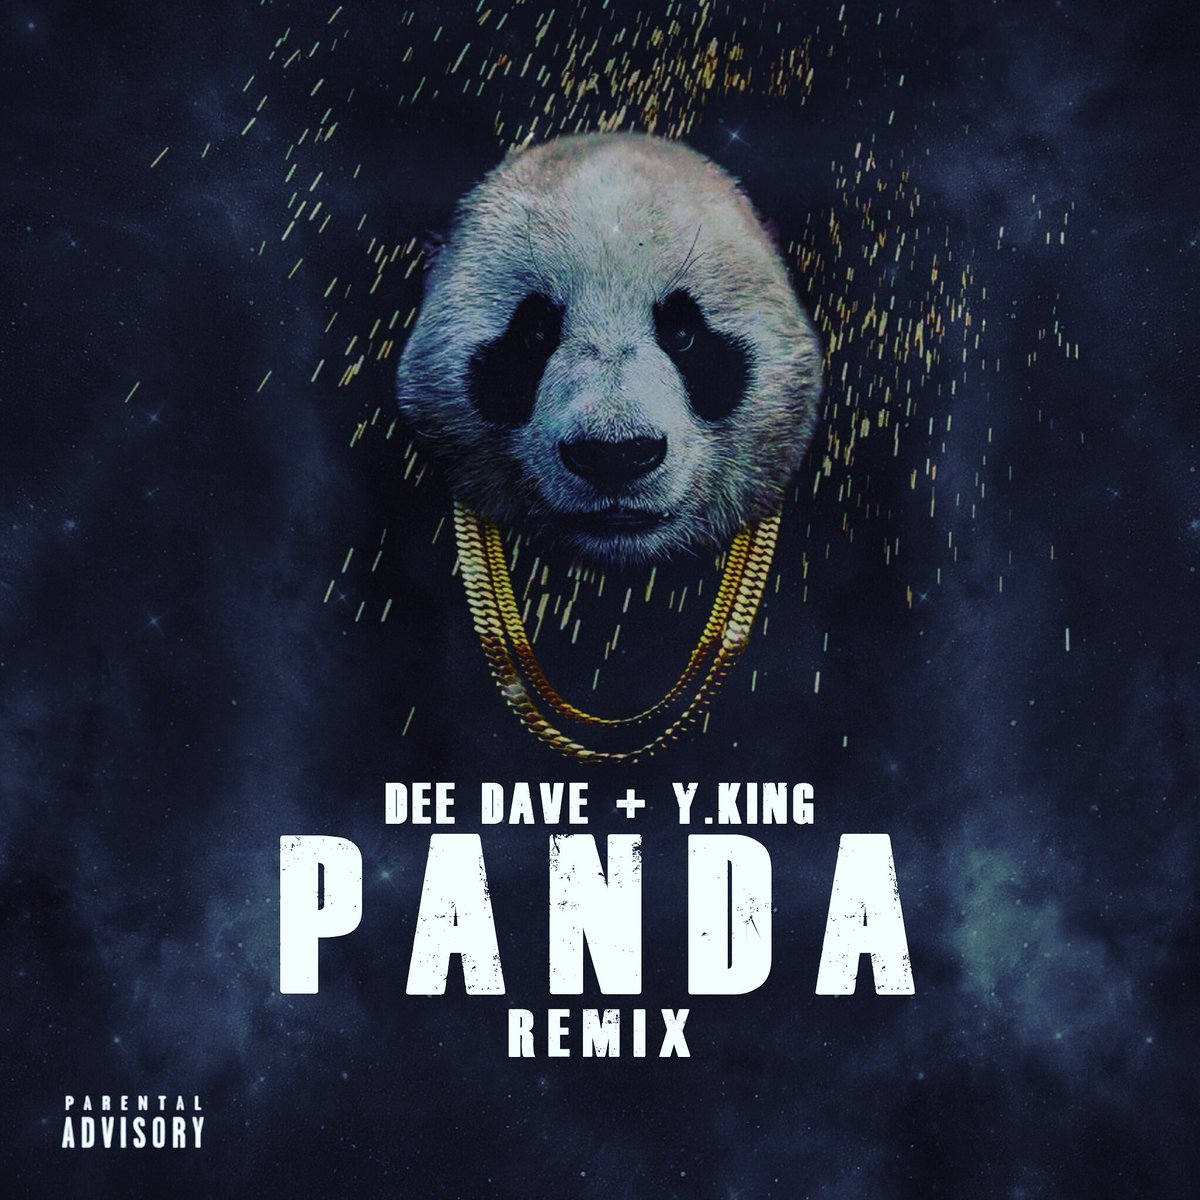 Песня панда бегу от гепарда. Панда песня. Панда ремикс. Панда Панда песня. Обложка на песню Панда е.